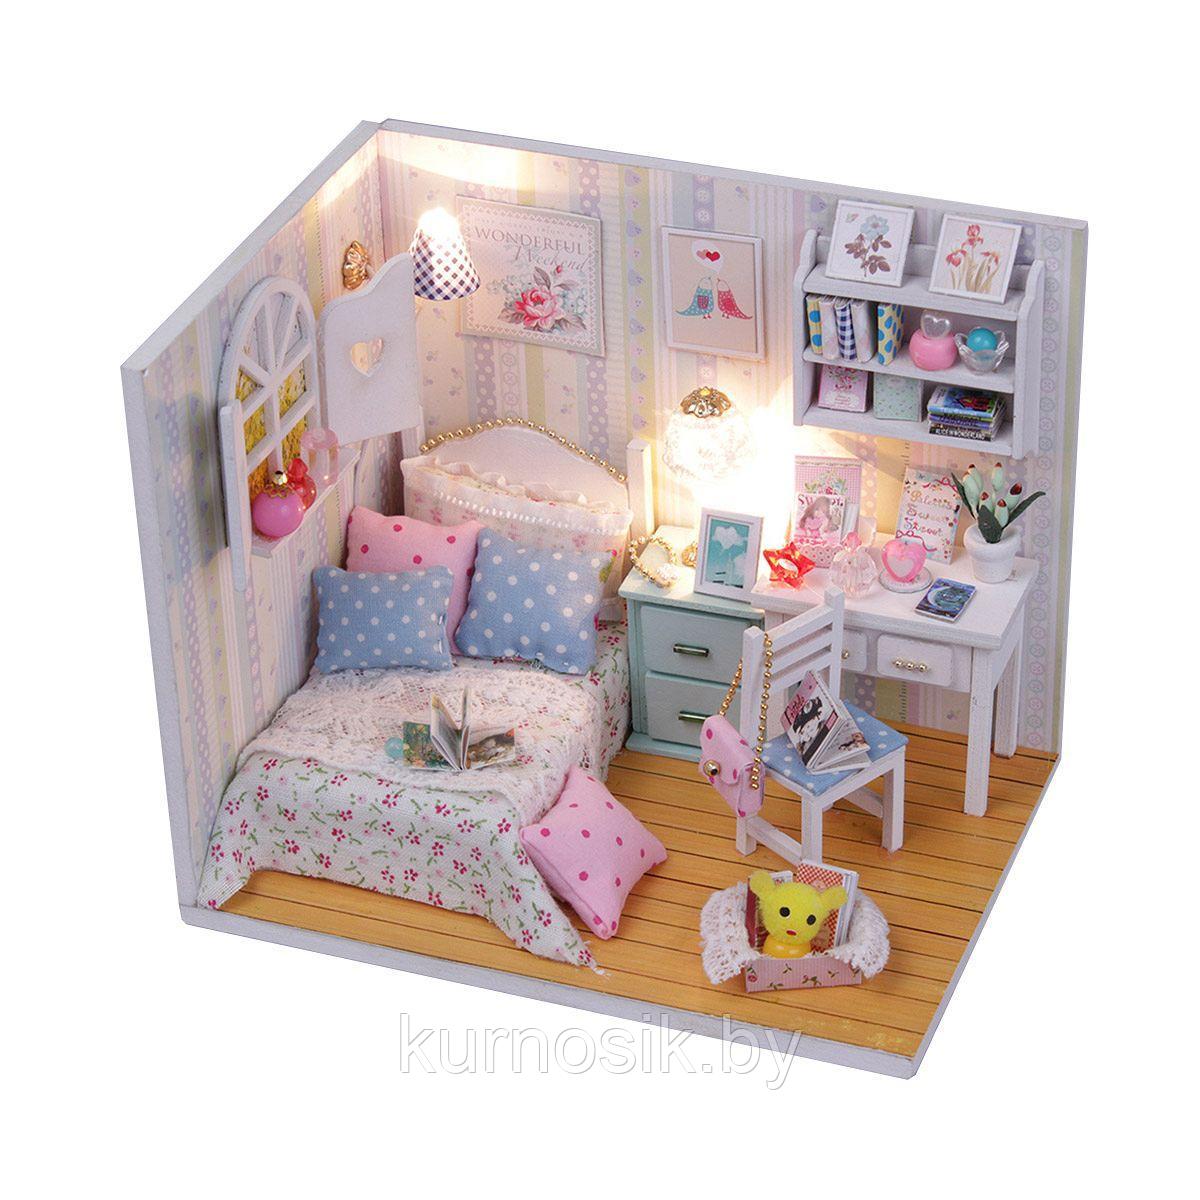 Румбокс Hobby Day Mini House Комната Полины (M013)